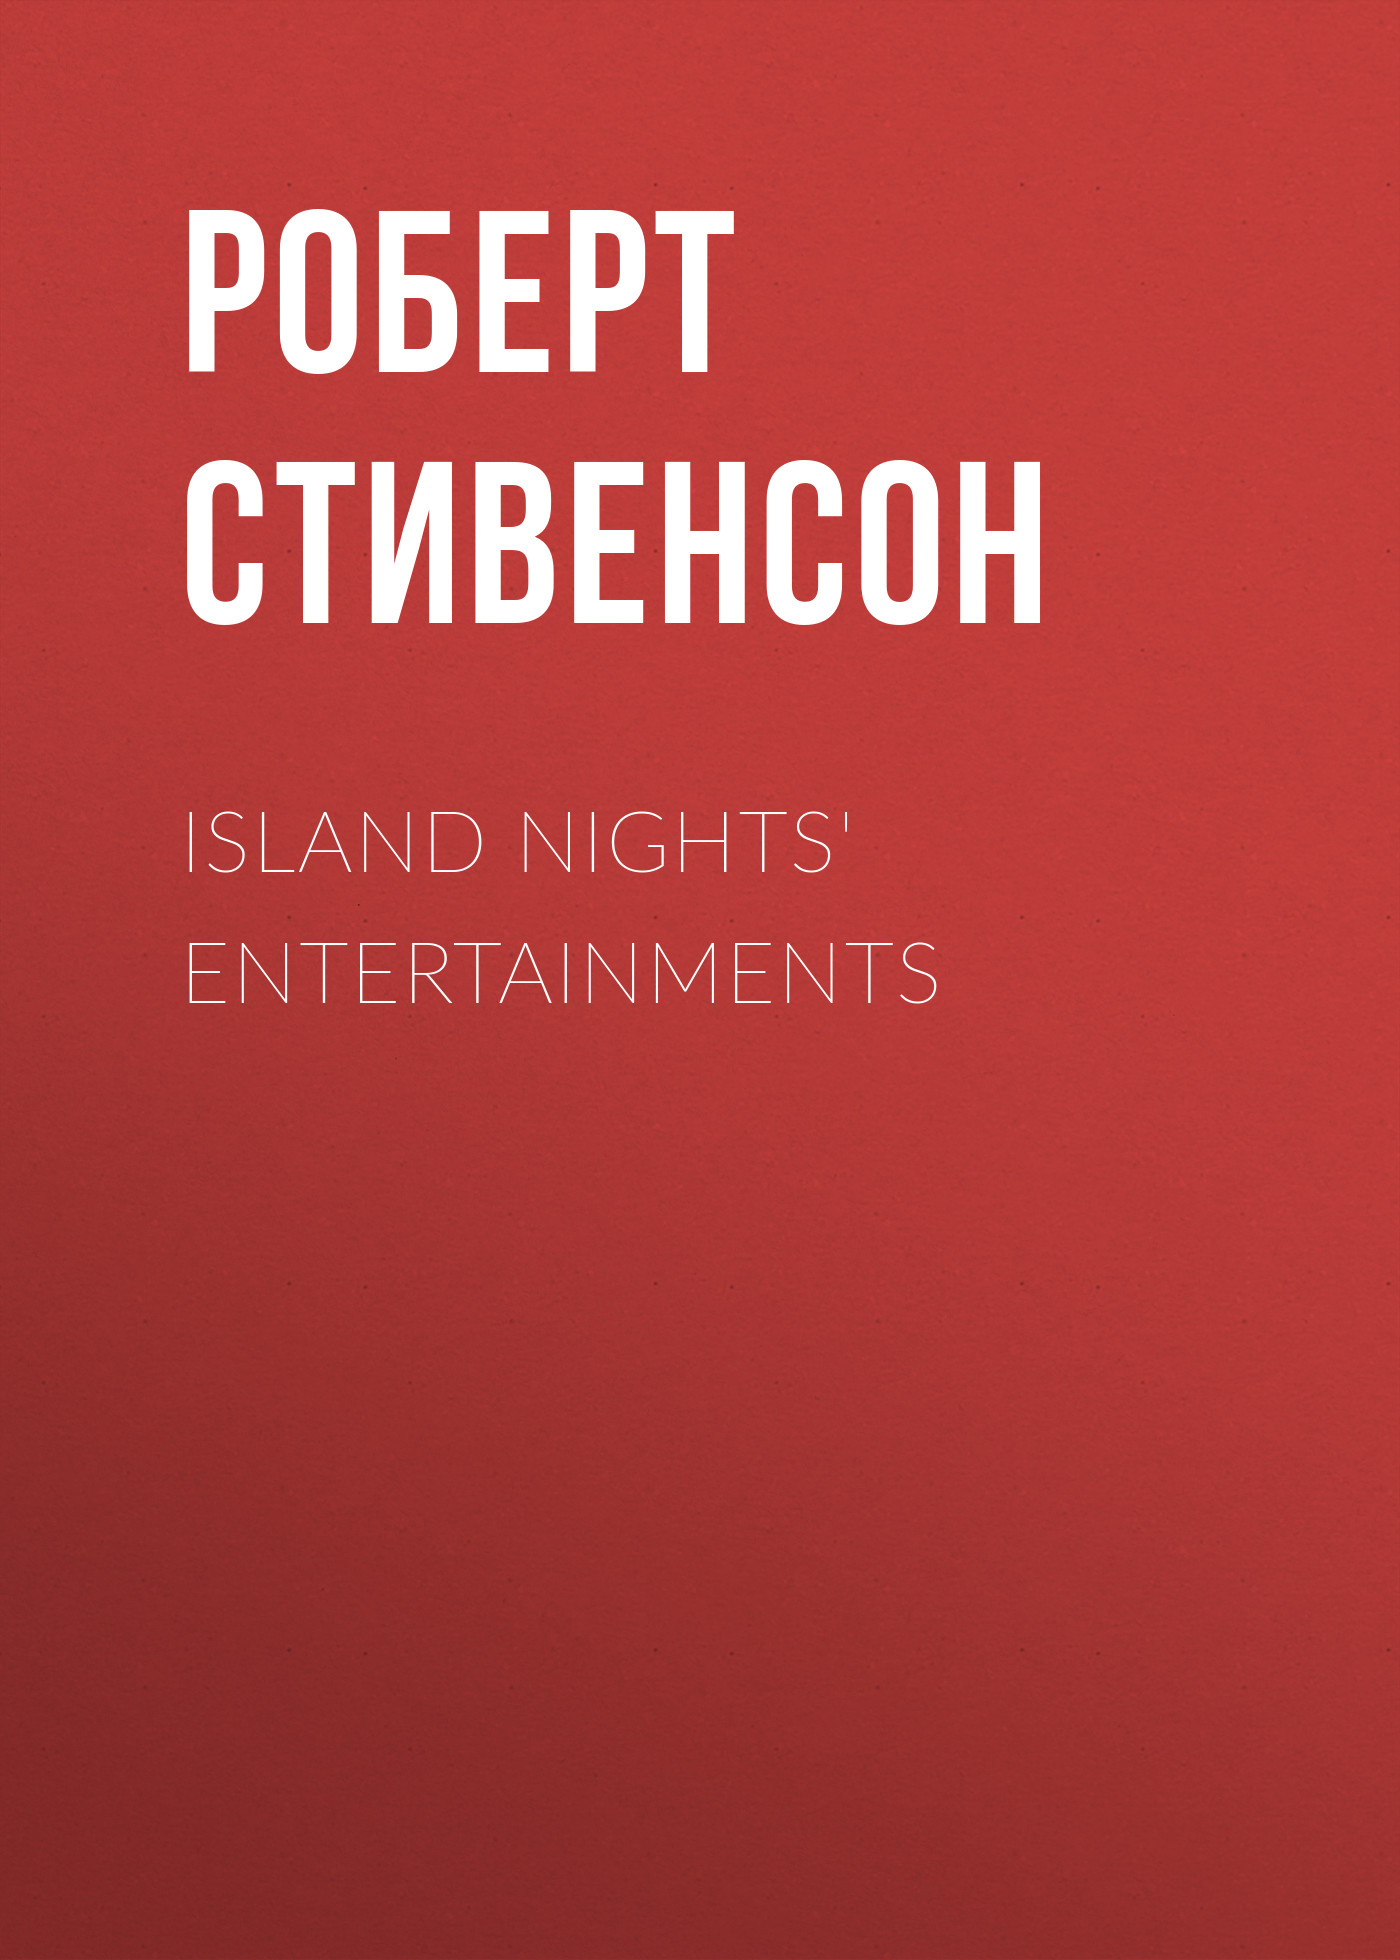 Книга Island Nights' Entertainments из серии , созданная Роберт Стивенсон, может относится к жанру Литература 19 века, Зарубежная старинная литература, Зарубежная классика. Стоимость электронной книги Island Nights' Entertainments с идентификатором 25475831 составляет 0 руб.